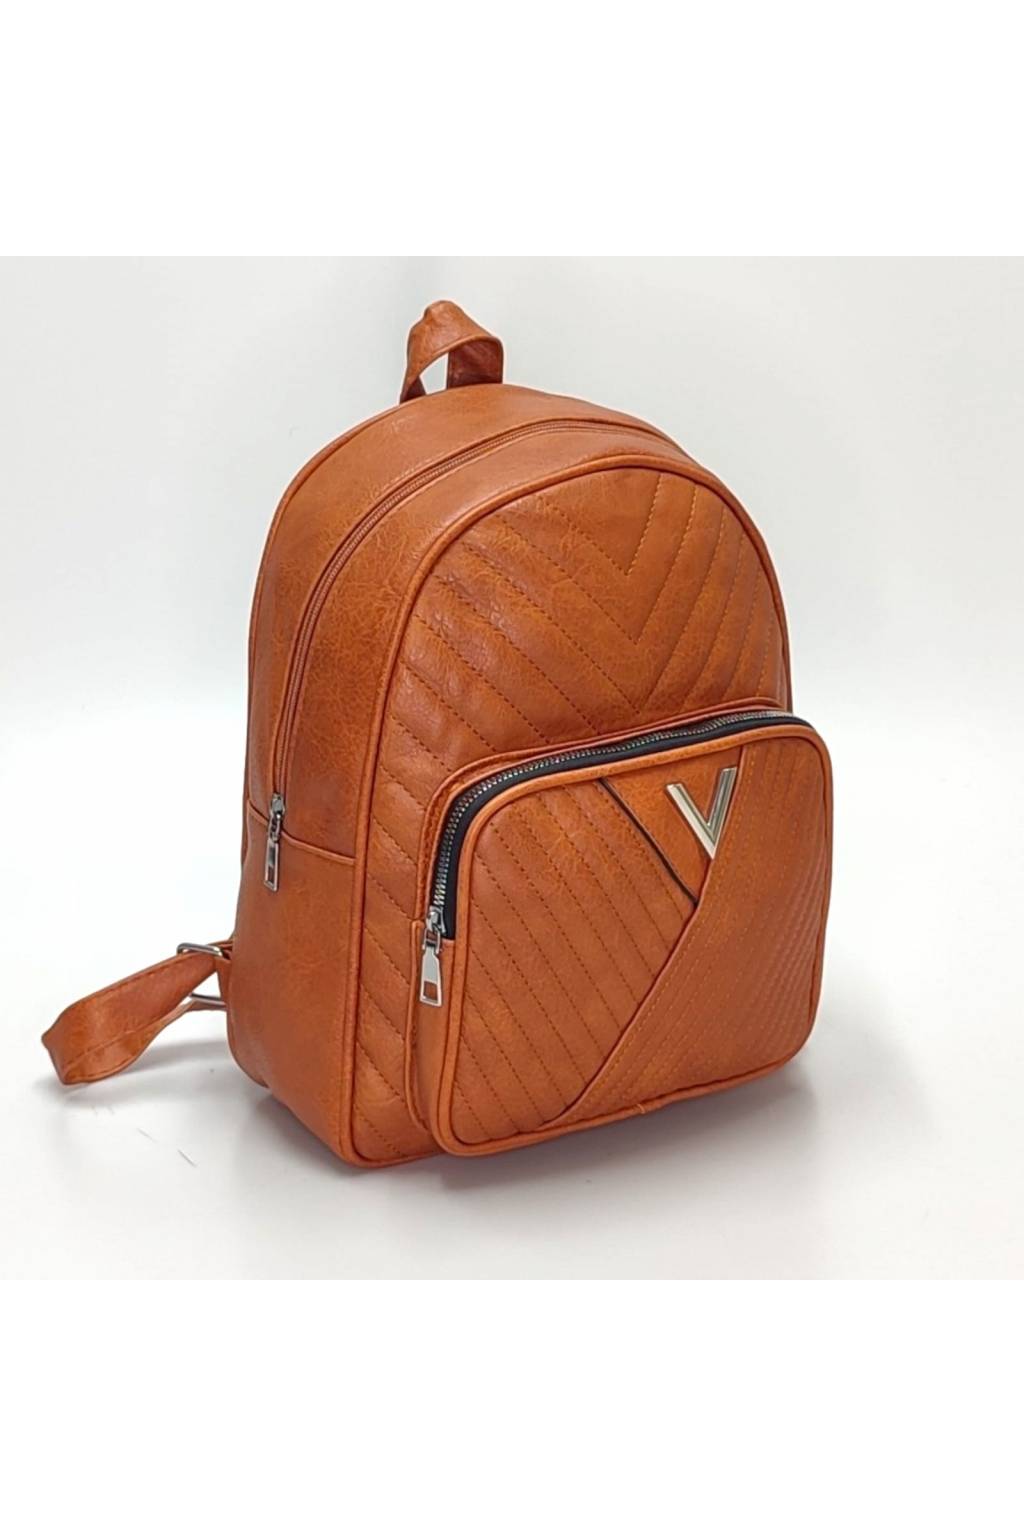 Dámsky ruksak 2403 svetlohnedá www.kabelky vypredaj.eu (14)